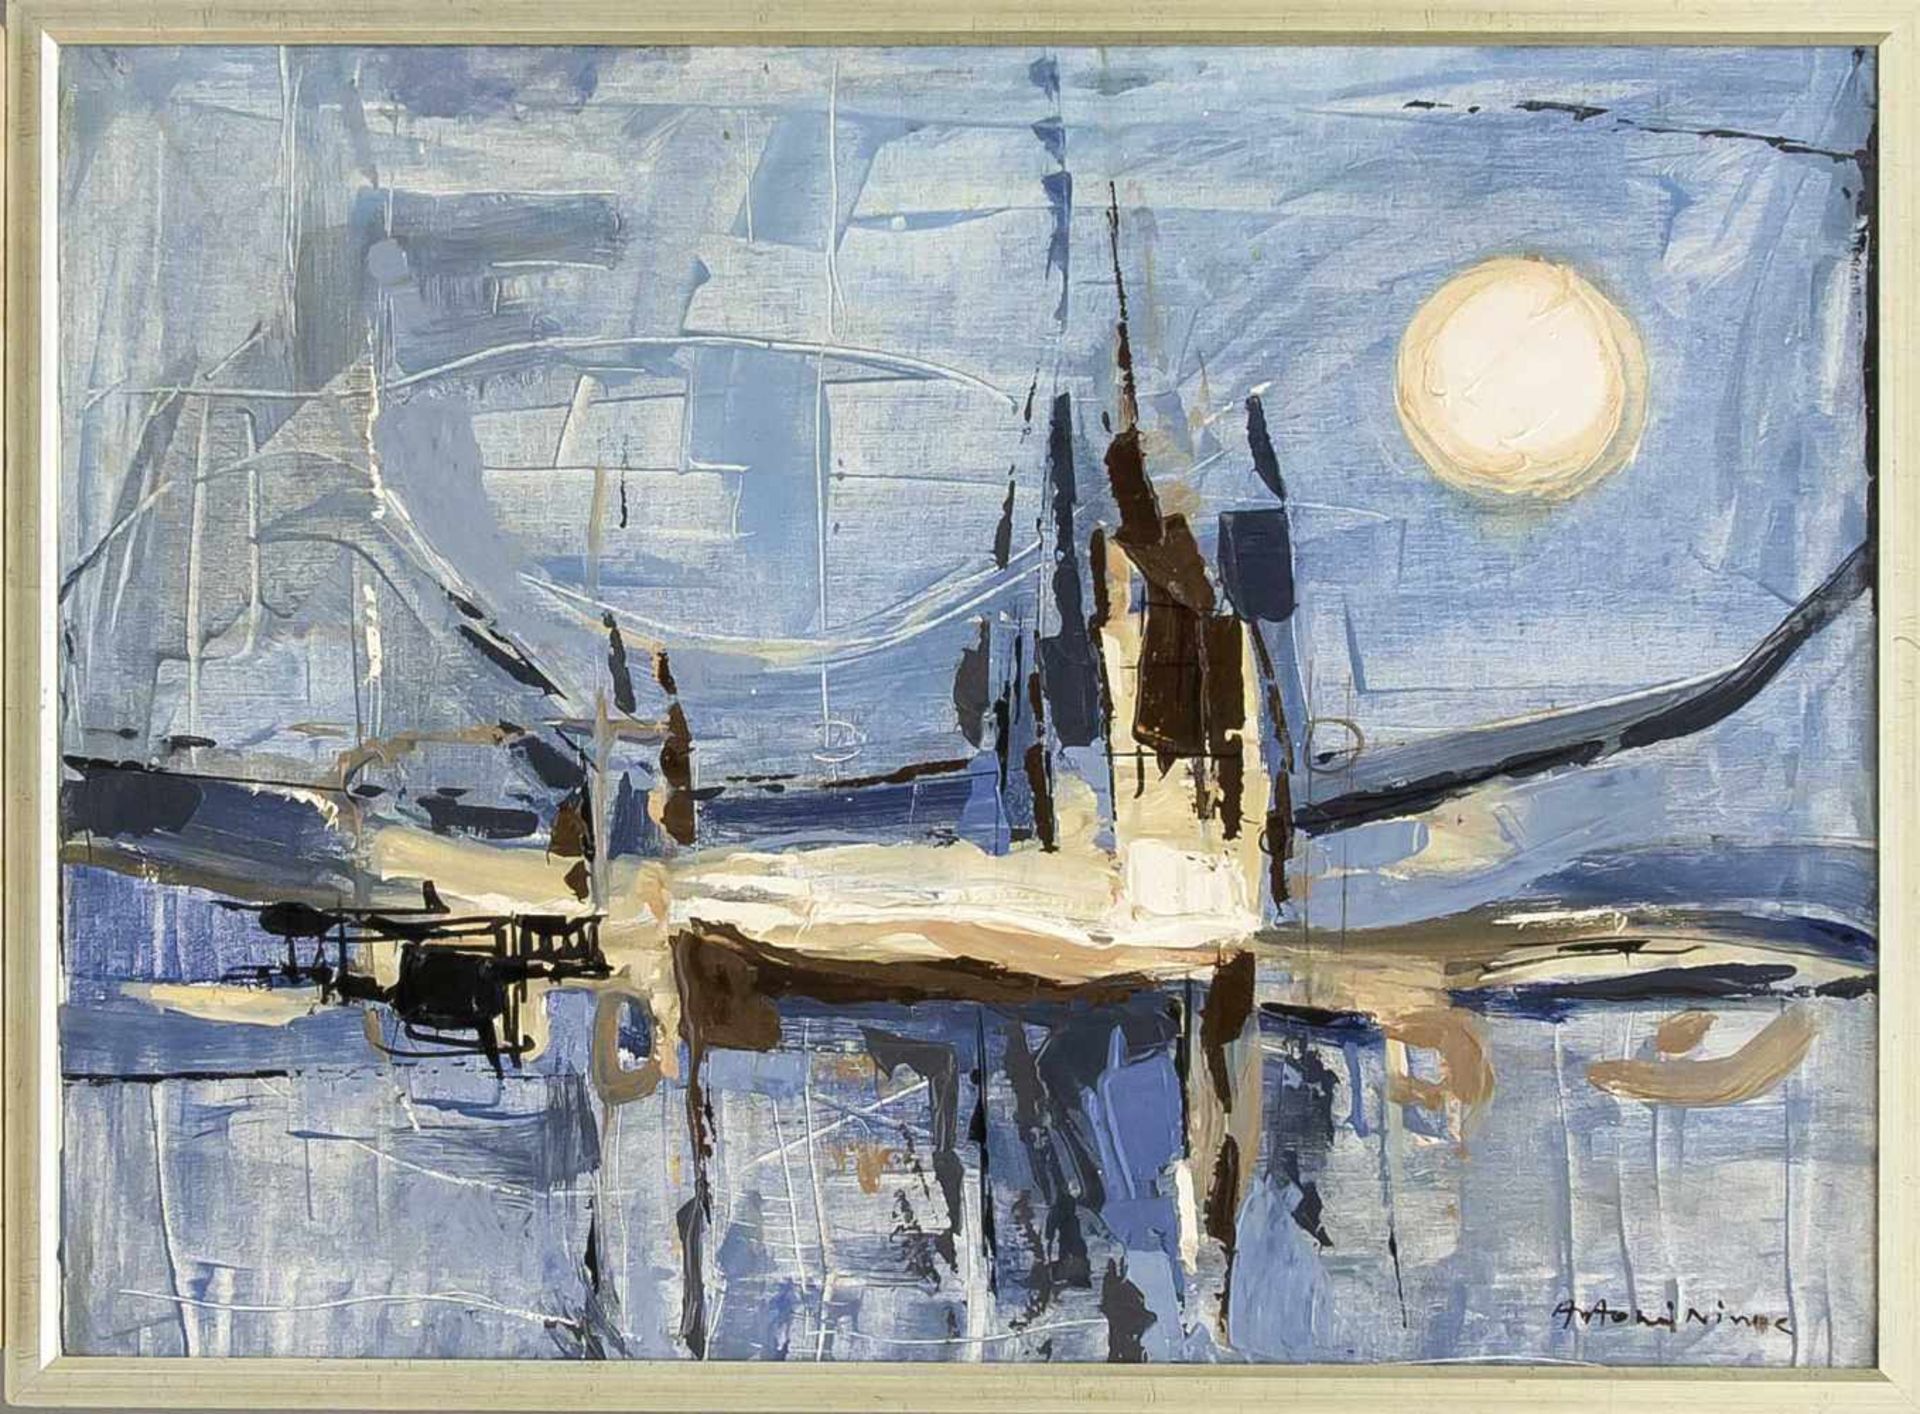 Antonis Ninos (1912-1996), griechischer Maler, "La Lune Rose", Öl/Lwd., gespachtelt,Griechenland, um